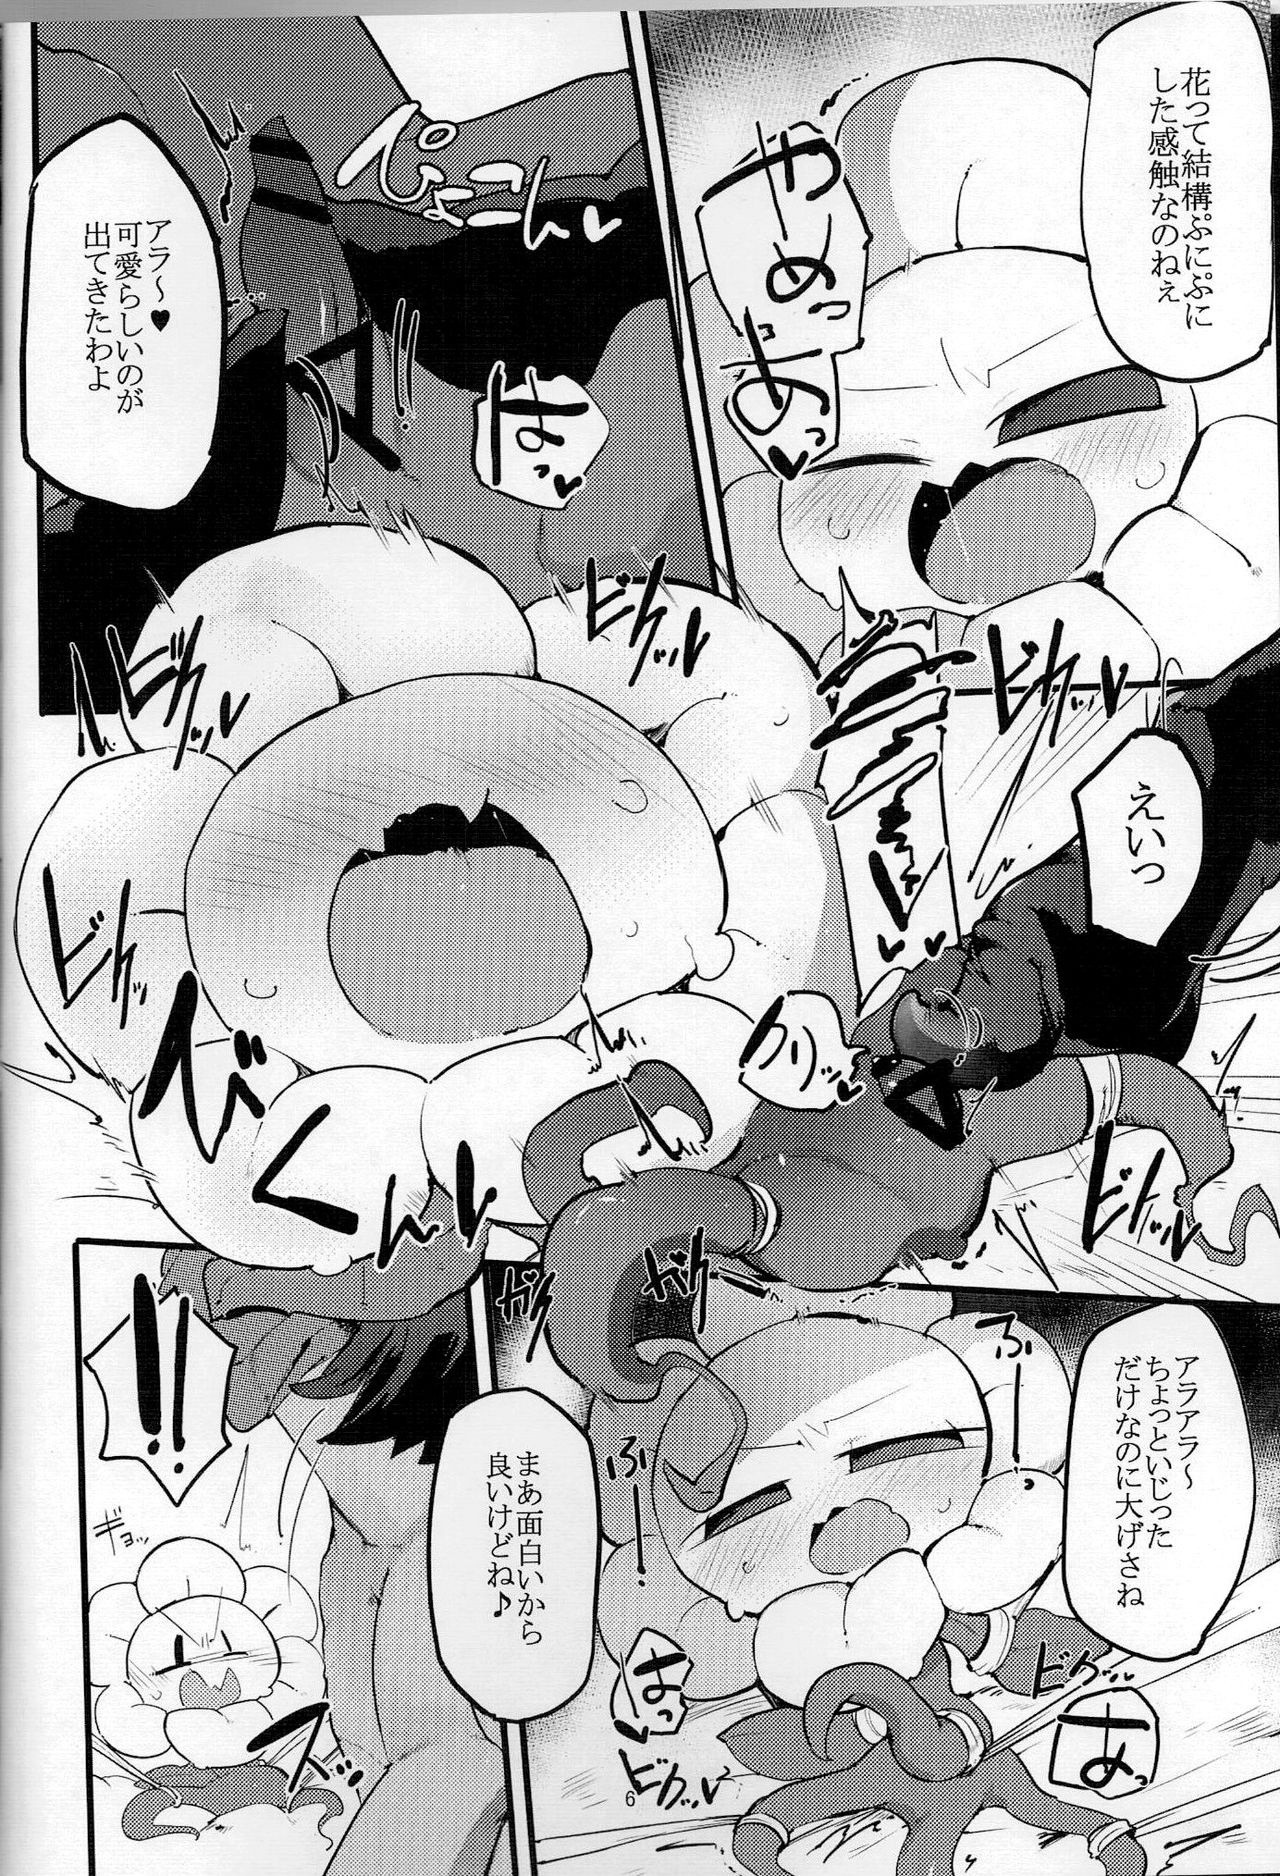 Hurrayy and Ahufu's F! hentai manga picture 3